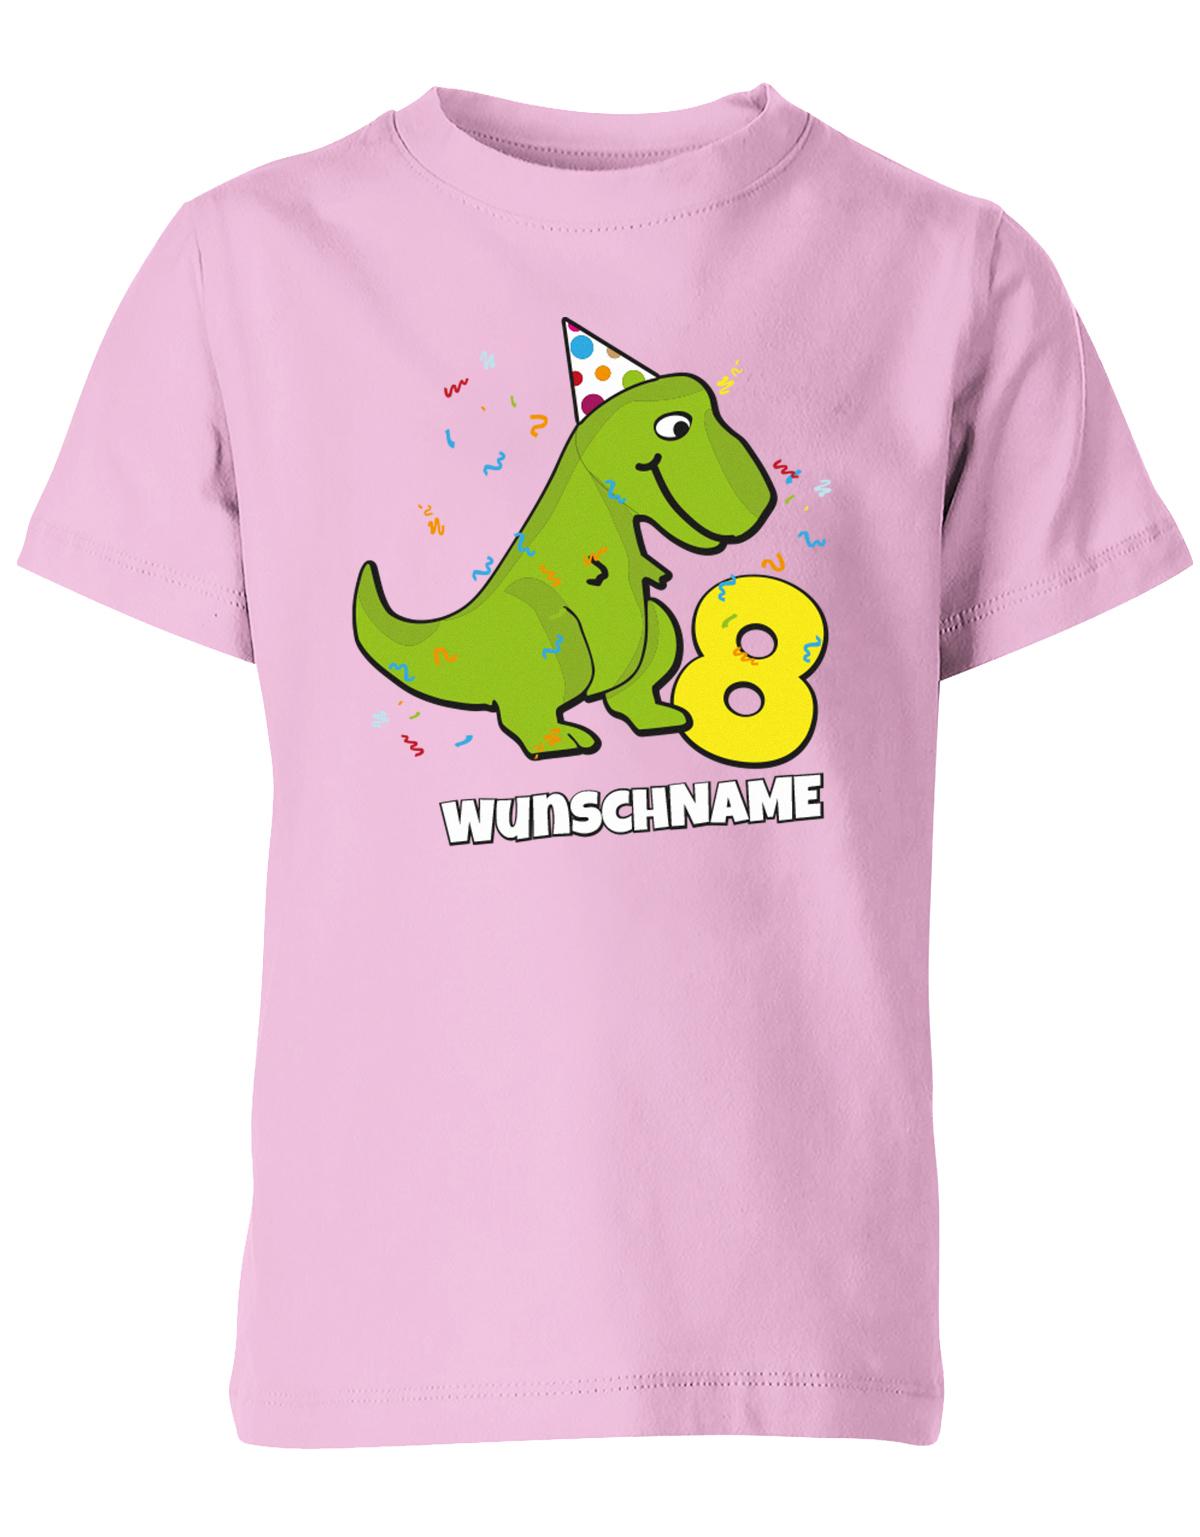 ich-bin-8-Dinosaurier-t-rex-wunschname-geburtstag-kinder-shirt-rosa